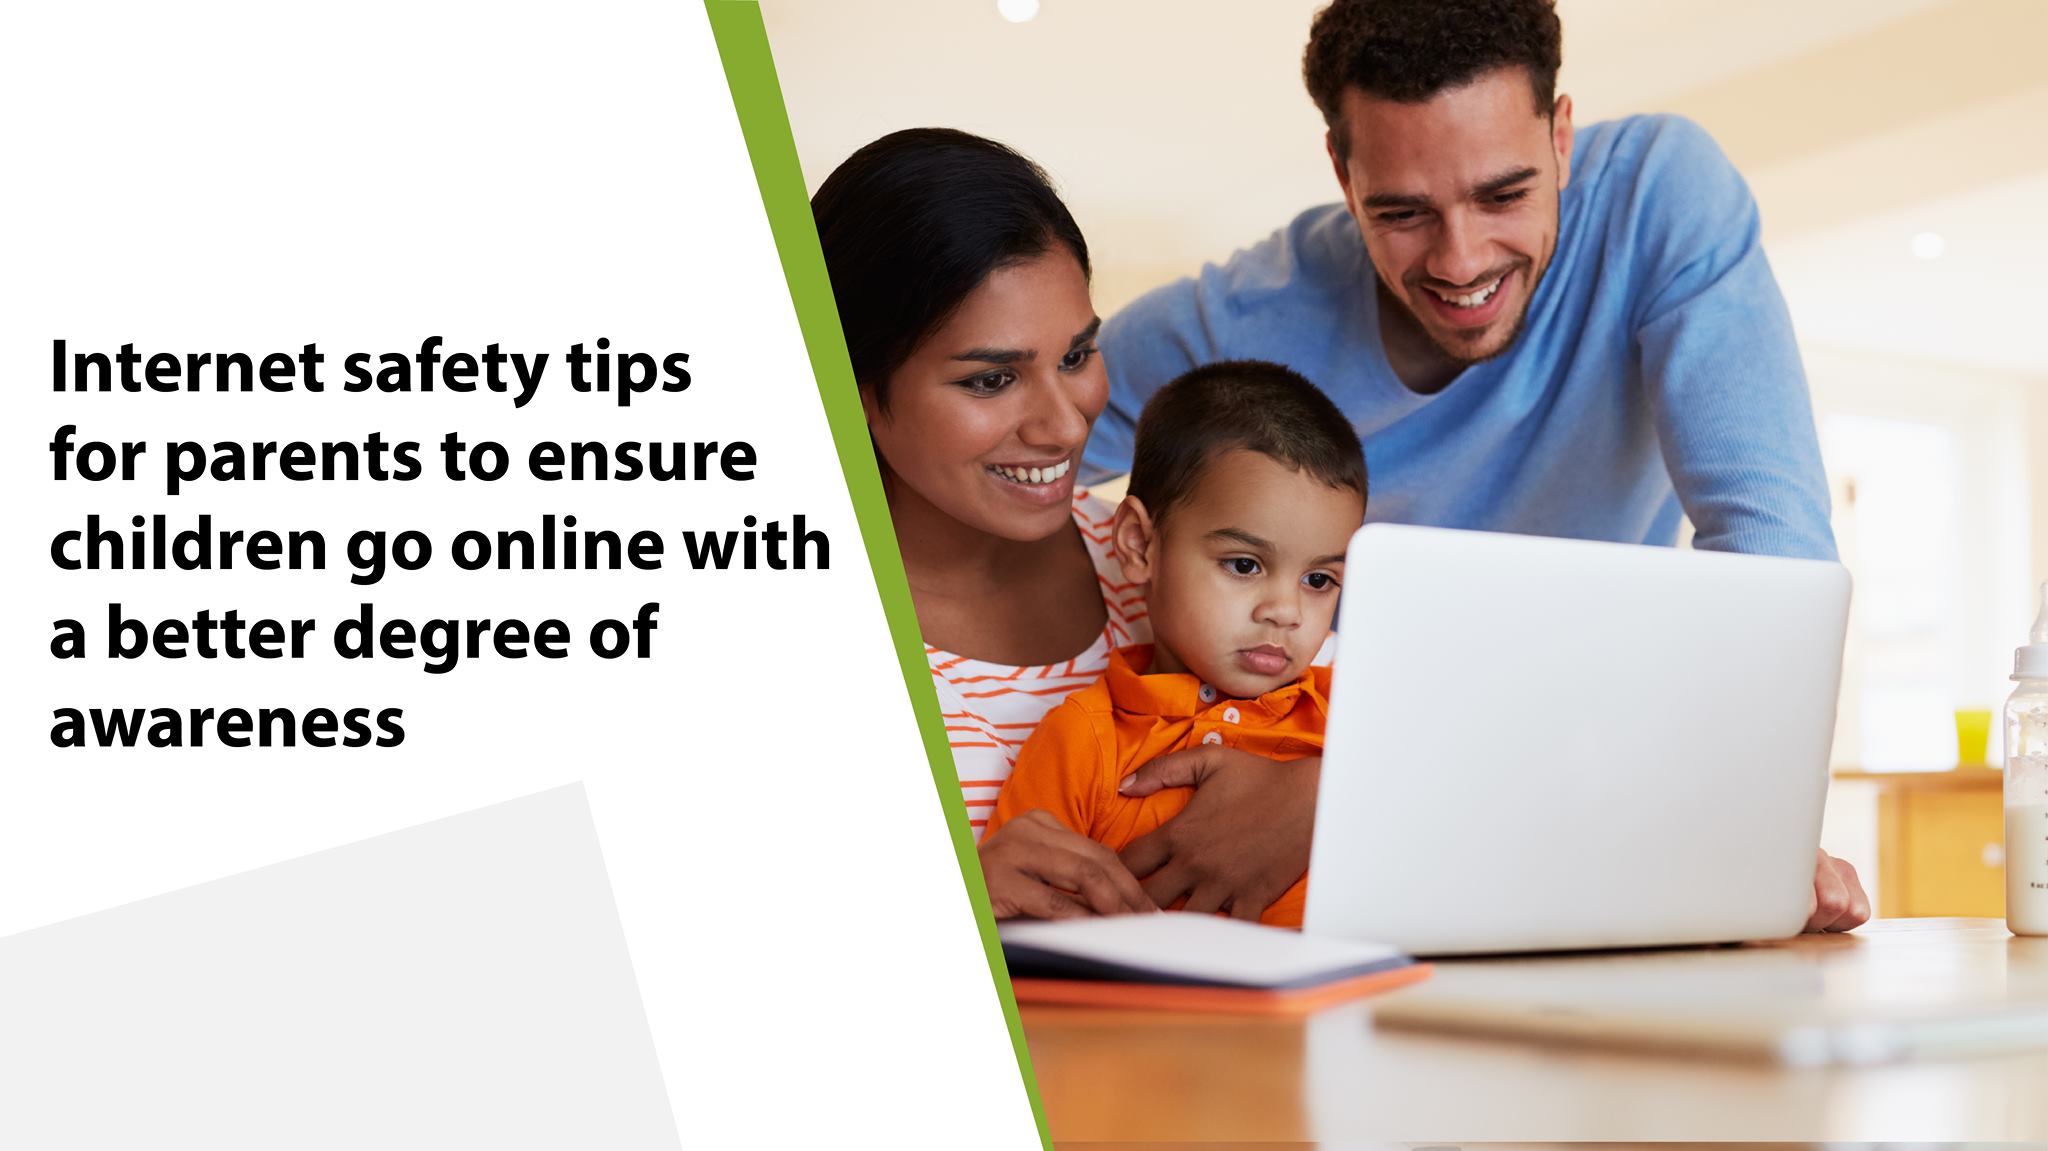 Internet safety tips for parents ensure children go online